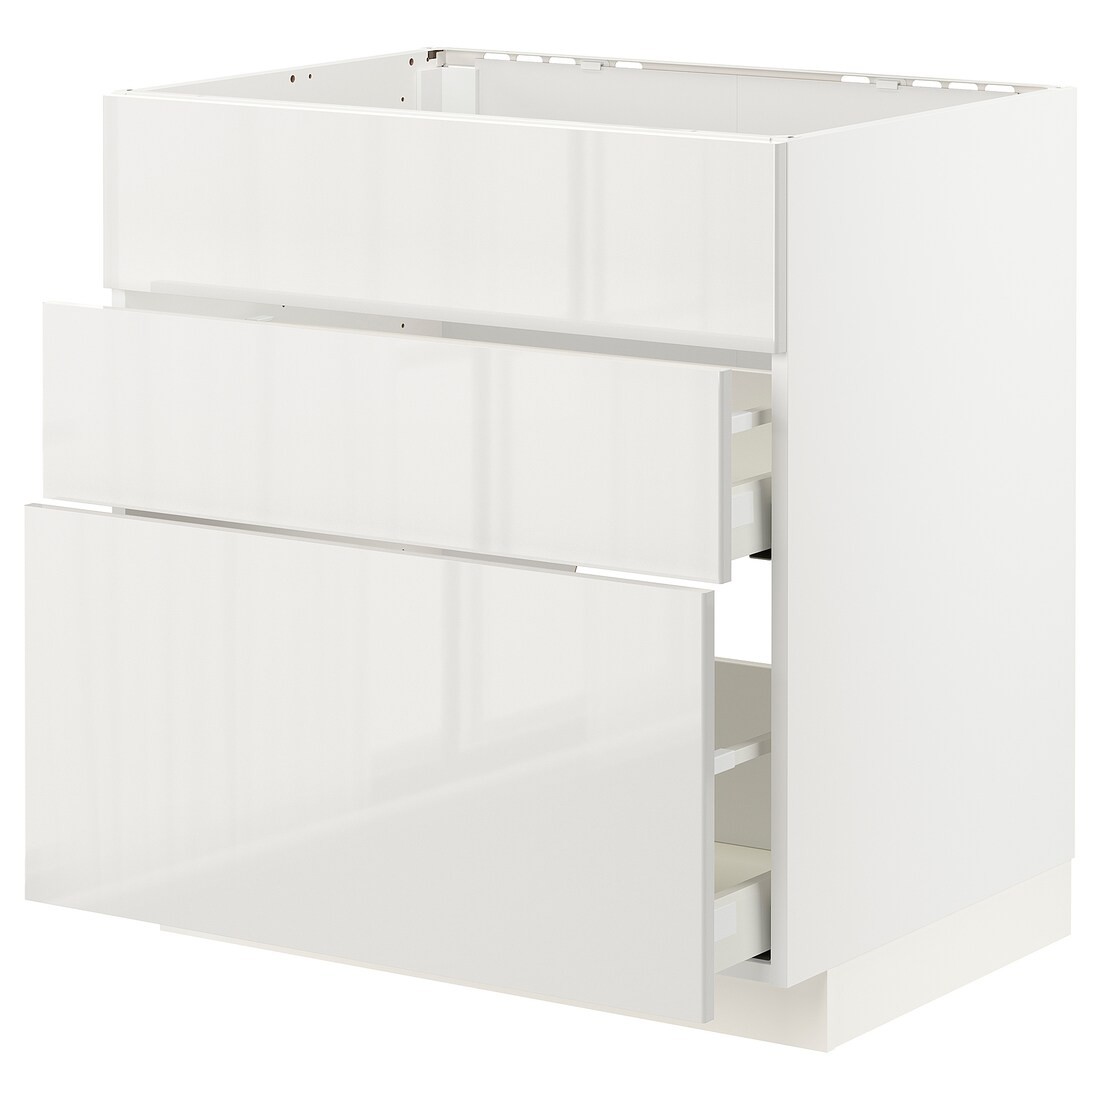 IKEA METOD МЕТОД / MAXIMERA МАКСИМЕРА Напольный шкаф для варочной панели / вытяжка с ящиком, белый / Ringhult светло-серый, 80x60 см 69335637 693.356.37